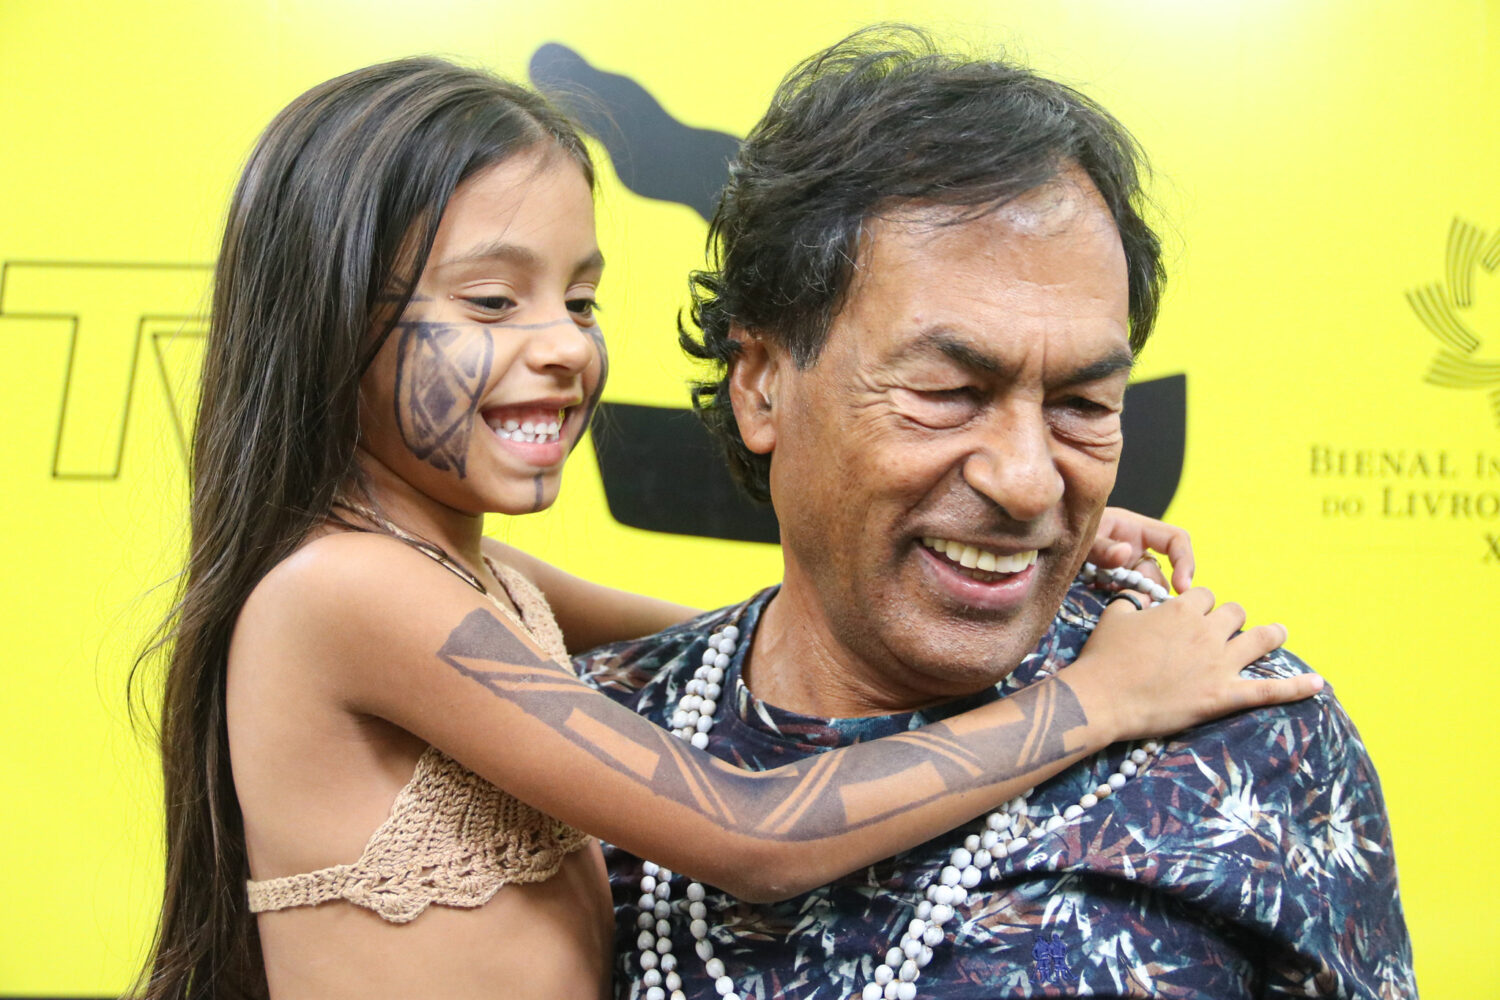 Krenak com uma criança indígena na Feira do Livro do Ceará: livros traduzidos em 19 países (Foto: Salvino Lobo/Divulgação)